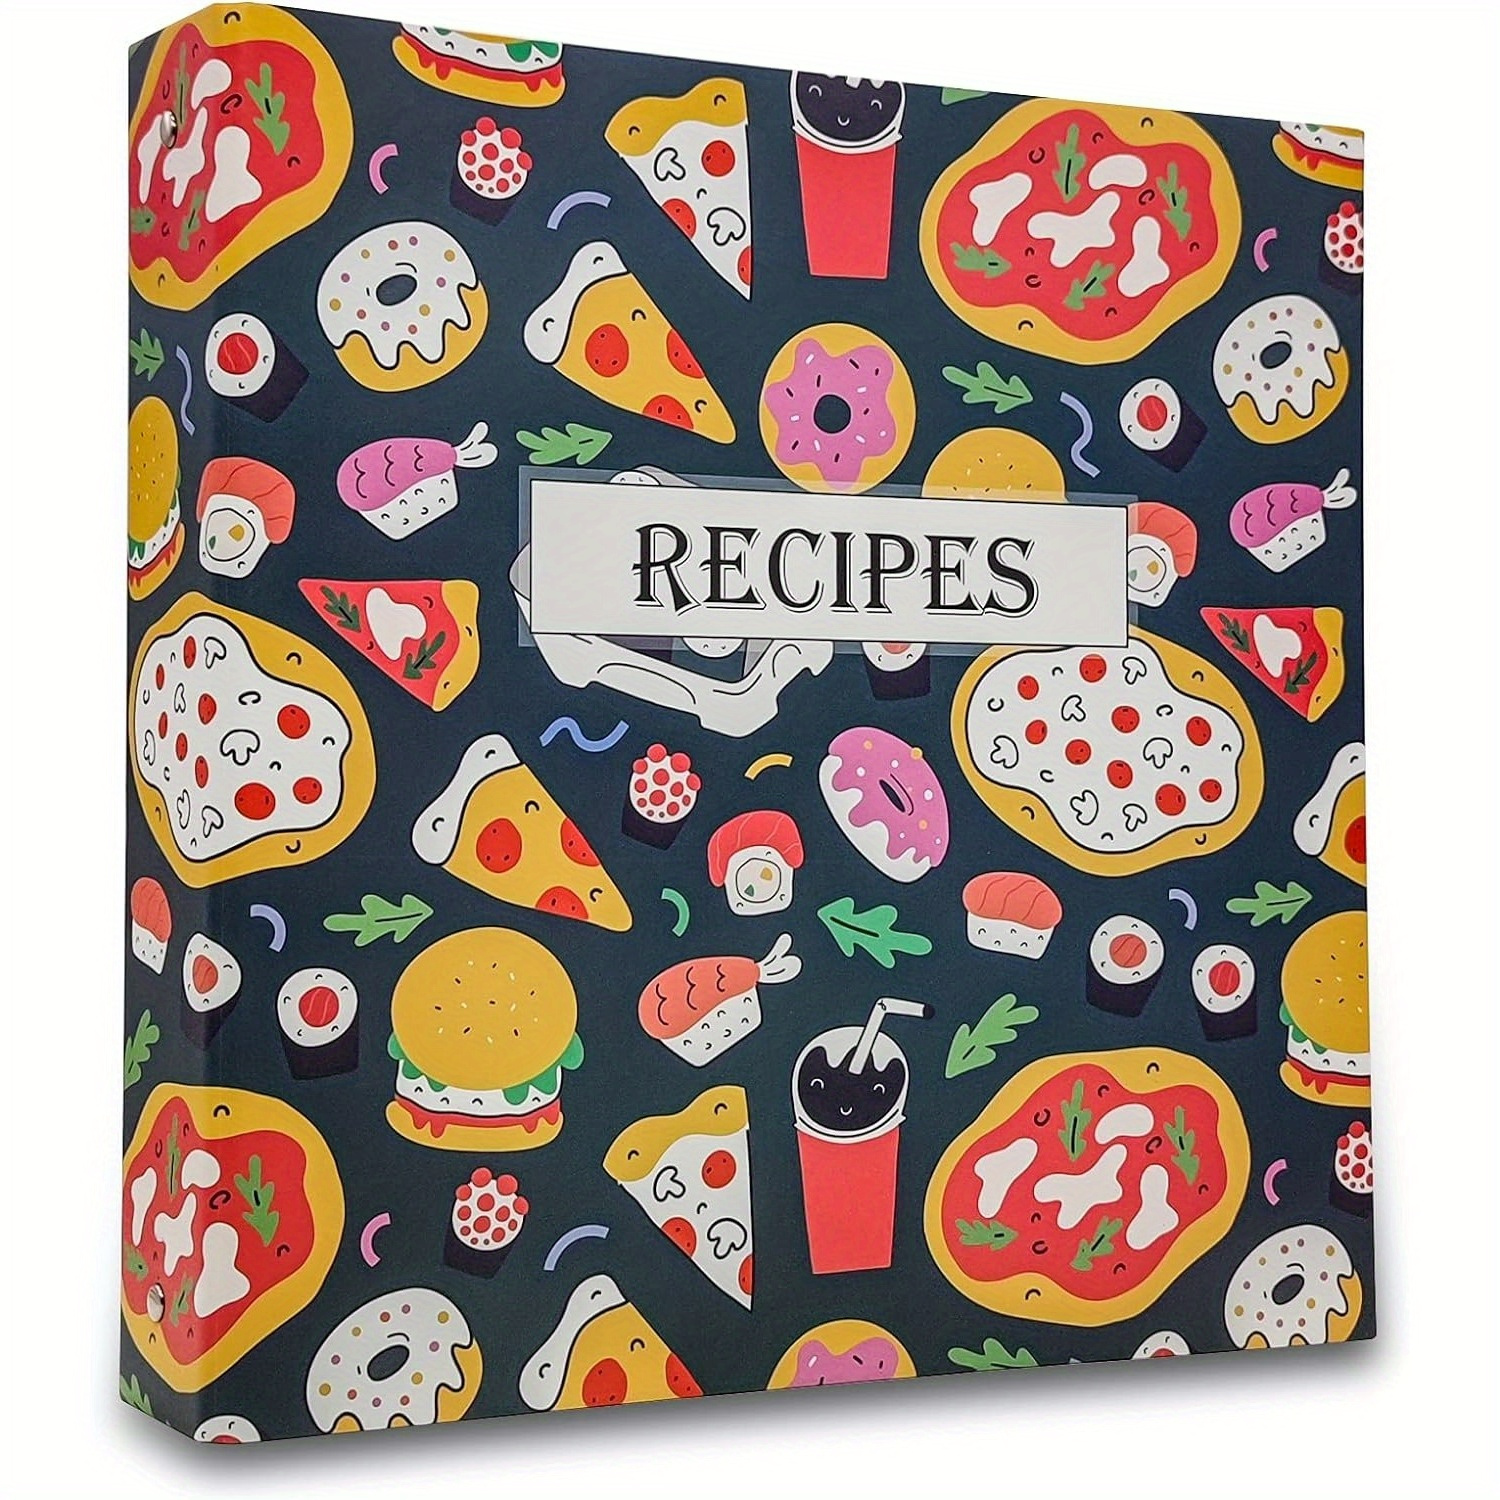 Recipe Book Made of Craft Paper, Set of 3 Cook Books, Recipe